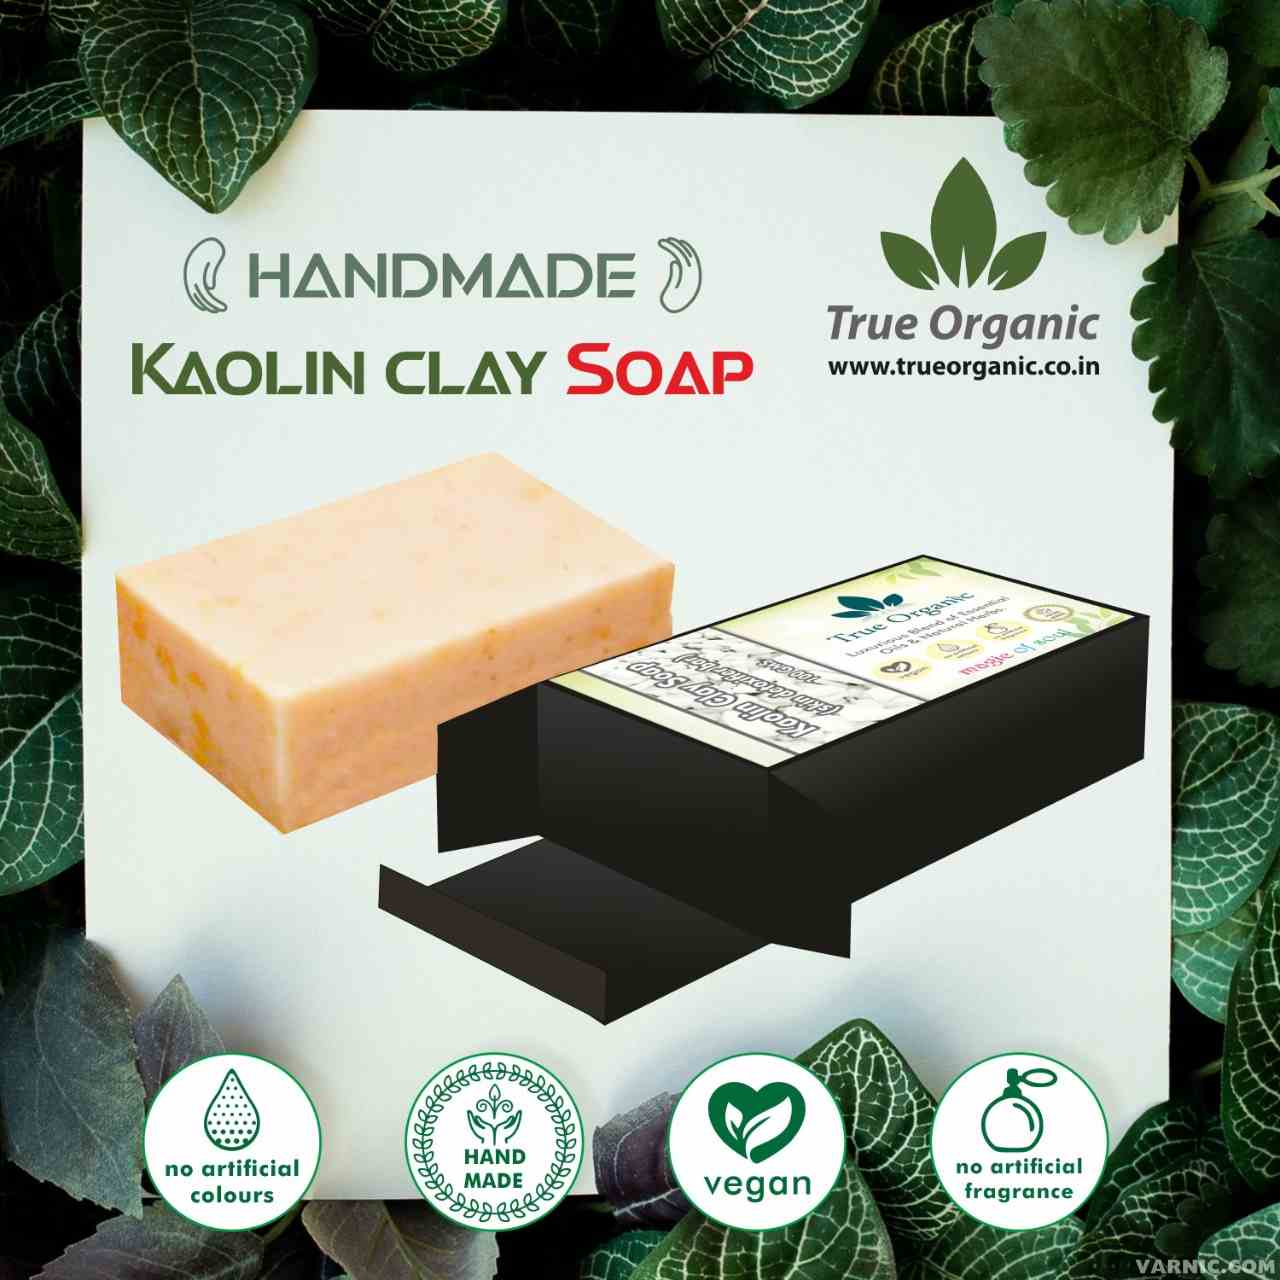 True Organic Kaolin Clay Soap